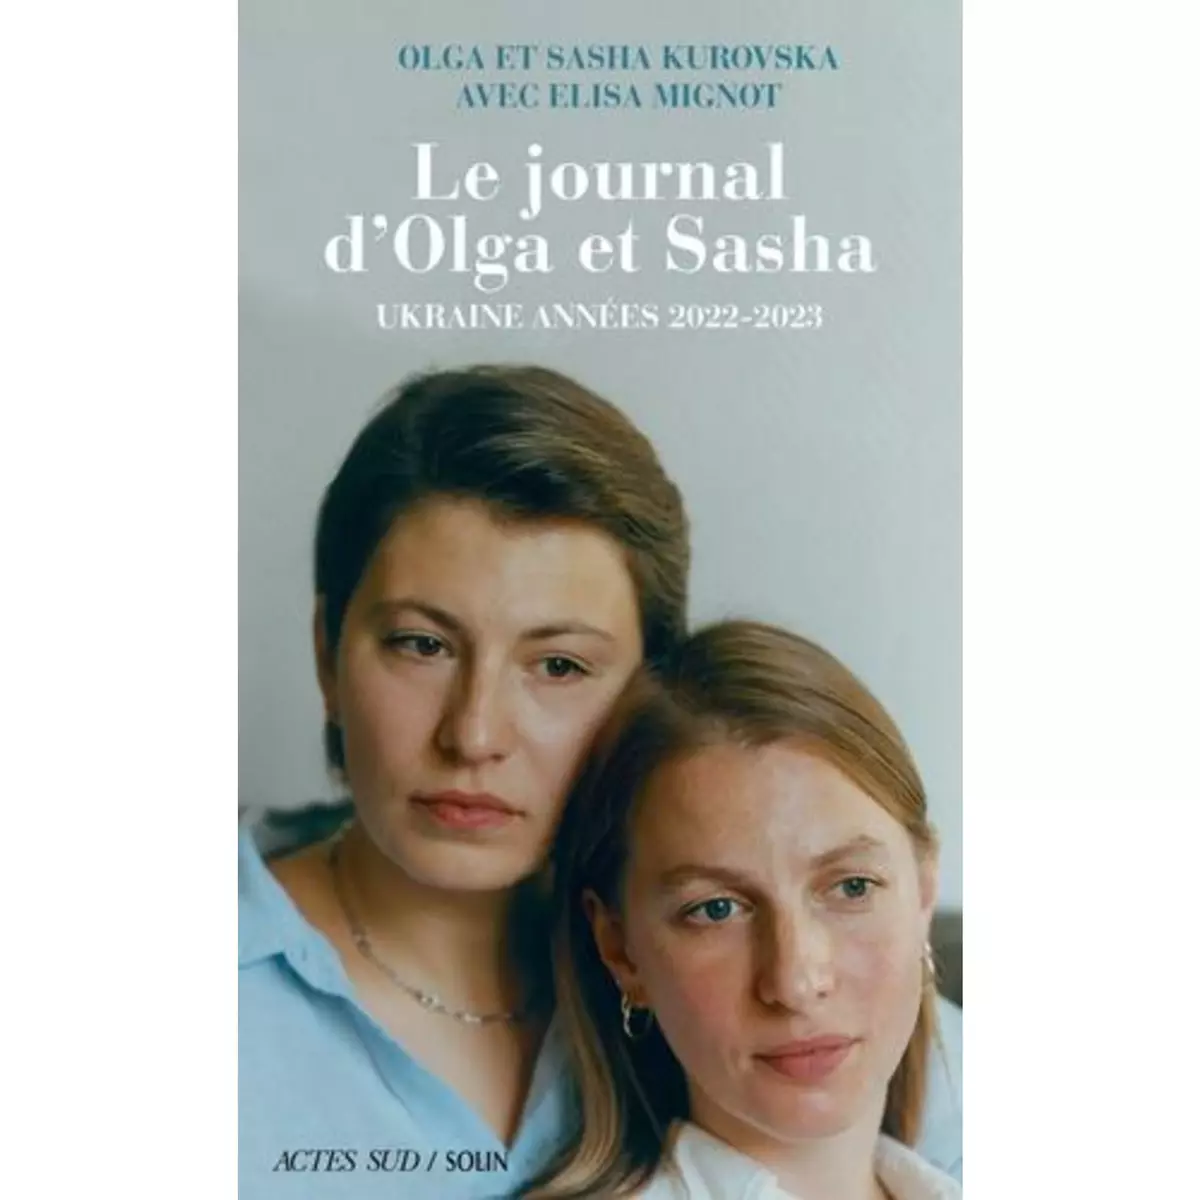  LE JOURNAL D'OLGA ET SASHA. UKRAINE ANNEES 2022-2023, Kurovska Olga